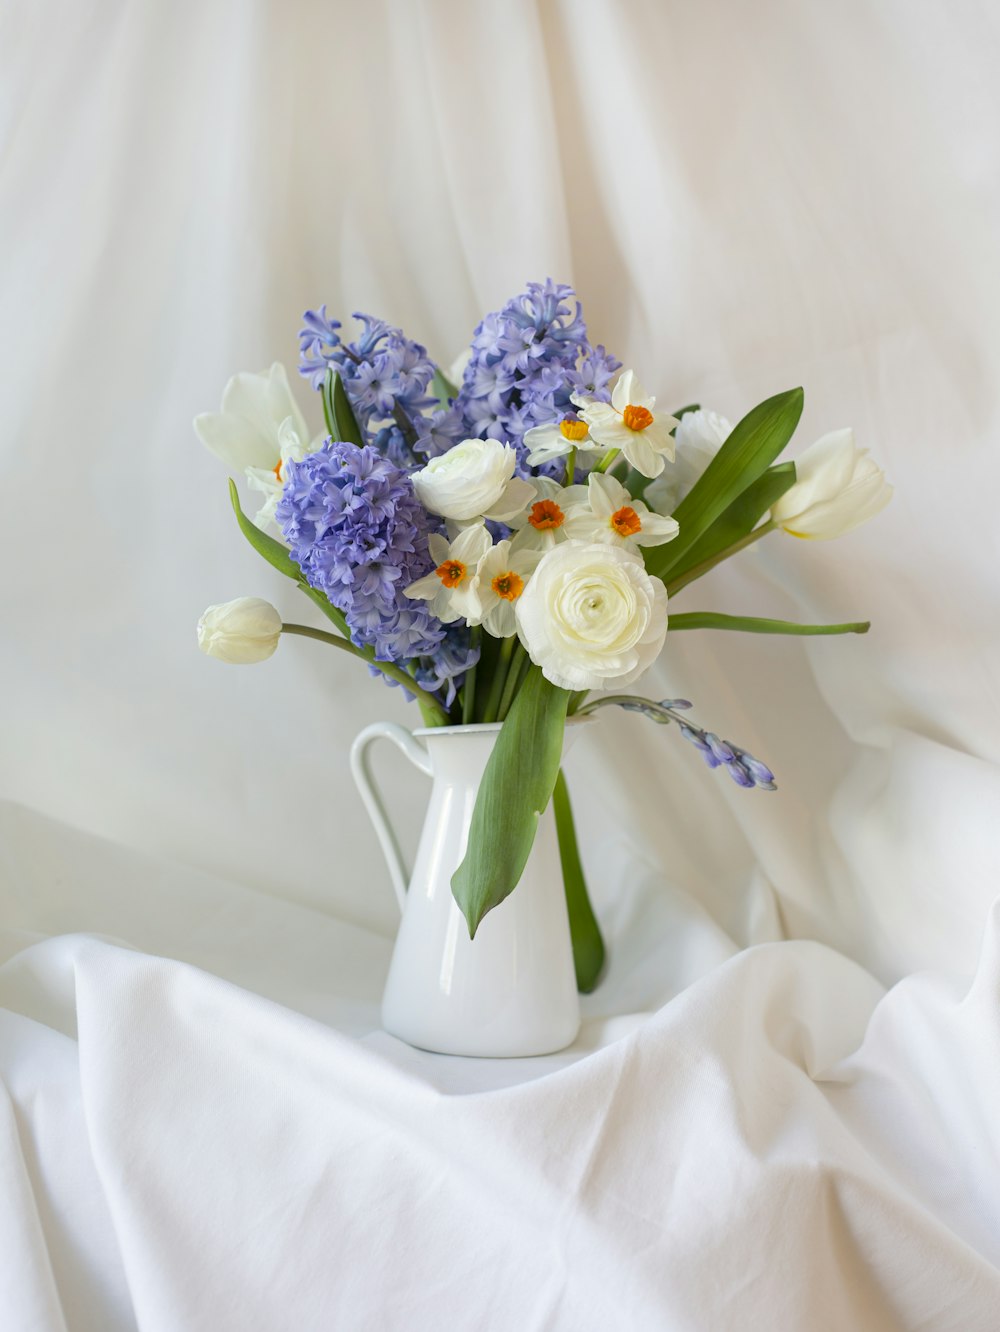 Ramo de flores blancas y moradas en jarrón de cerámica blanca